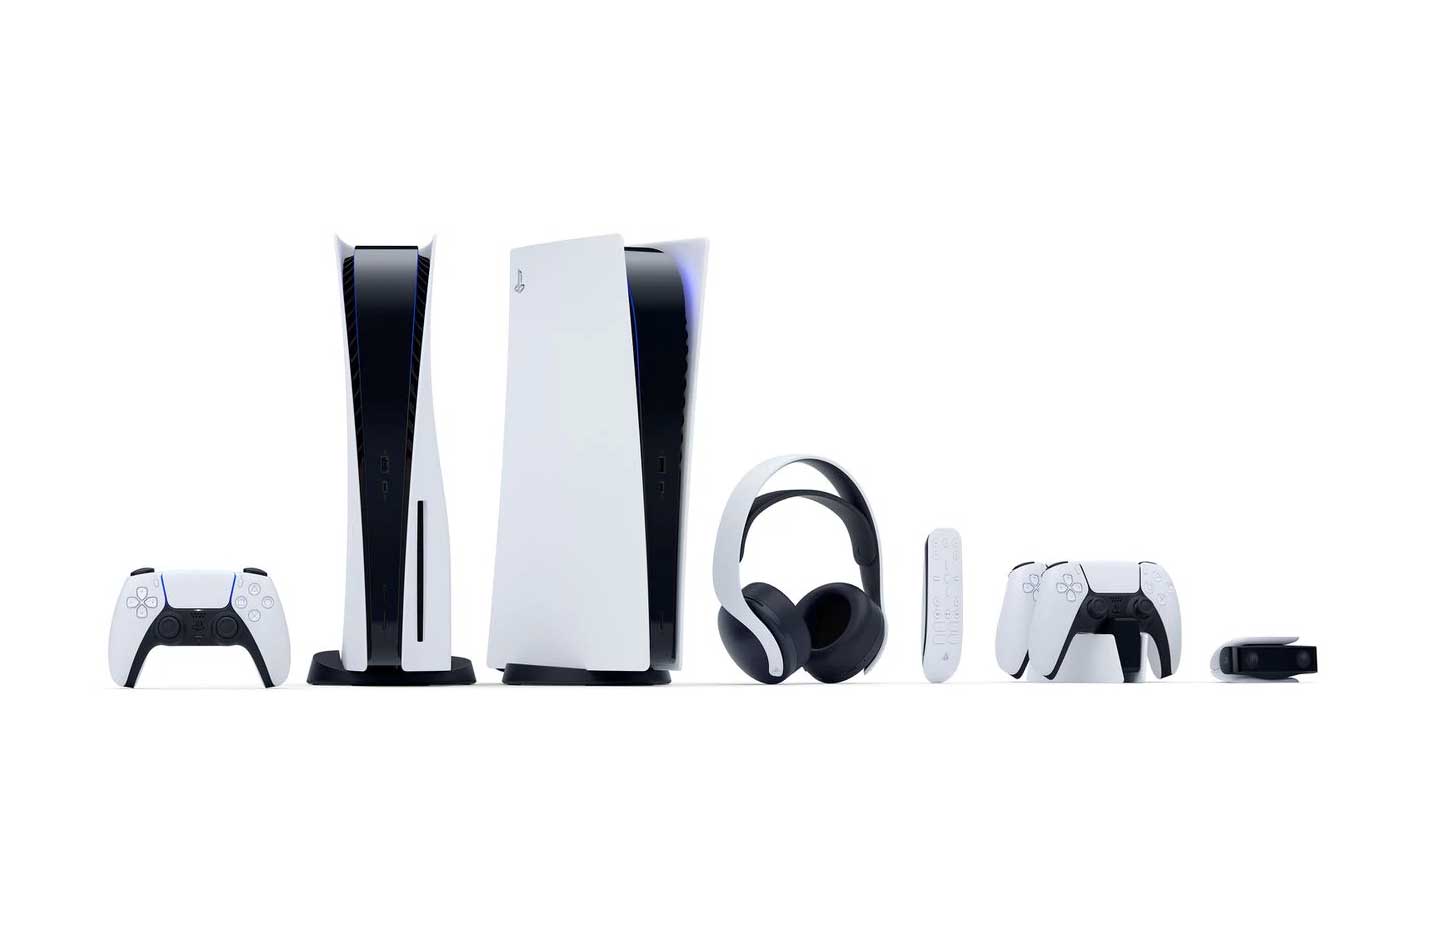 Image de la famille PlayStation 5 de Sony : les consoles Standard et Digital Edition, le contrôleur DualSense, la télécommande, le casque Pulse 3D, la station de recharge DualSense et la caméra HD.